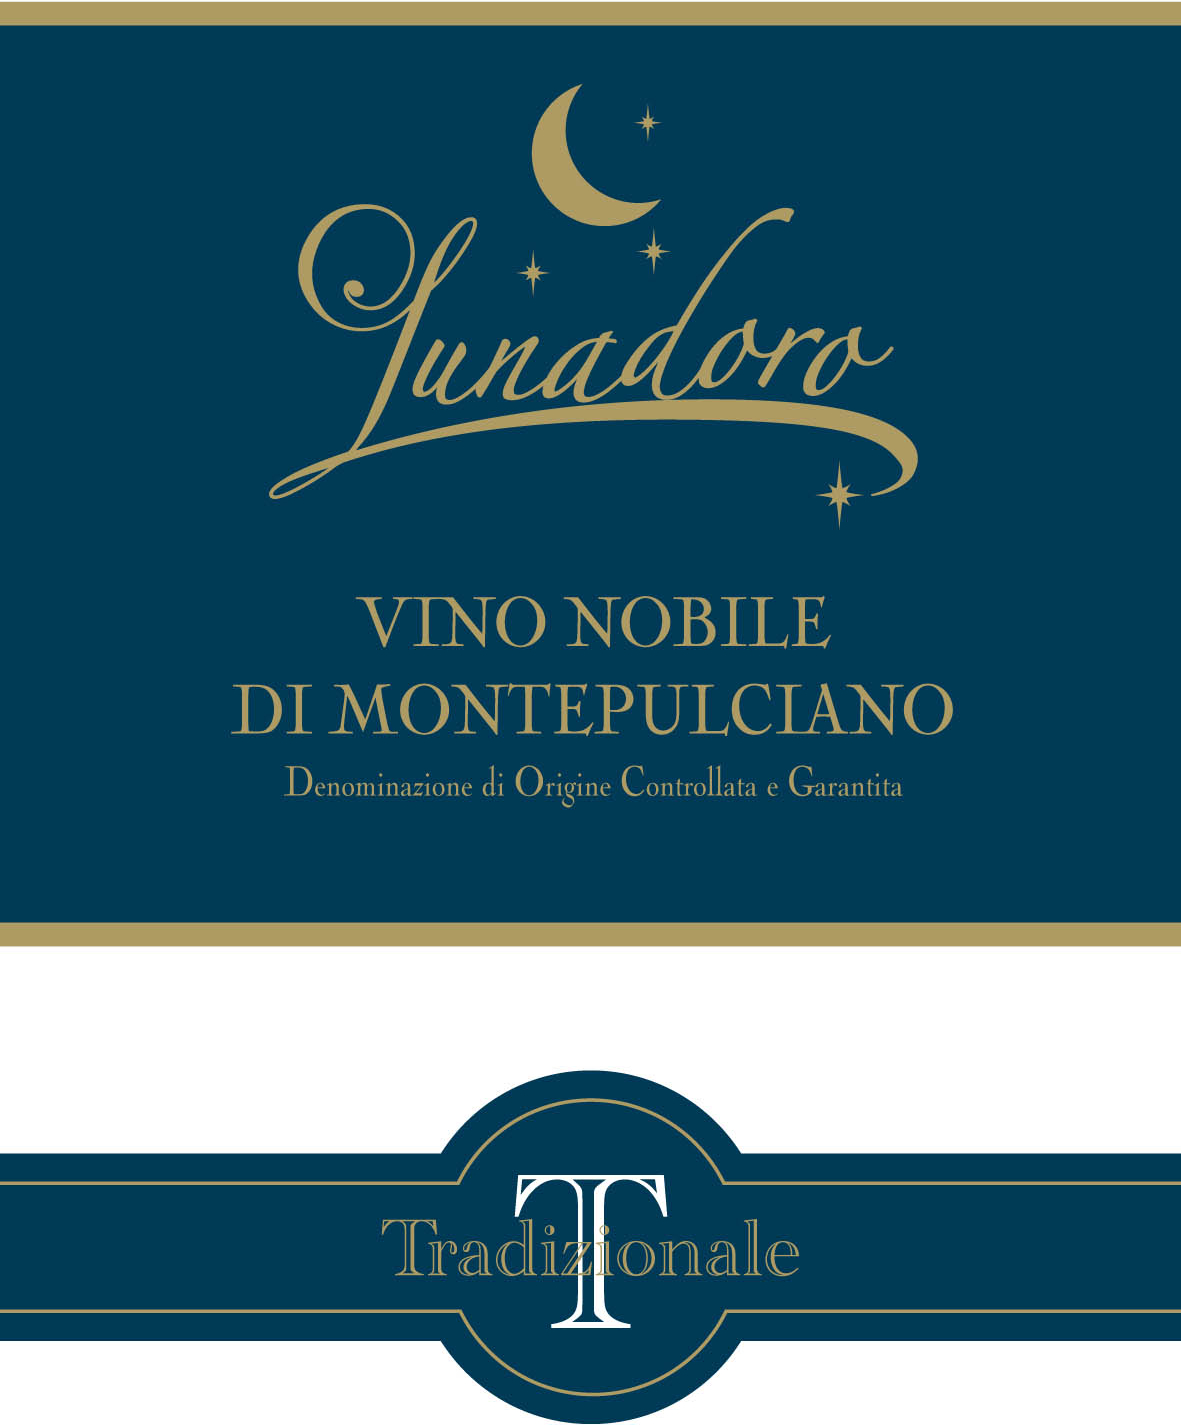 Lunadoro Tradizionale Vino Nobile di Montepulciano DOCG 2011-image